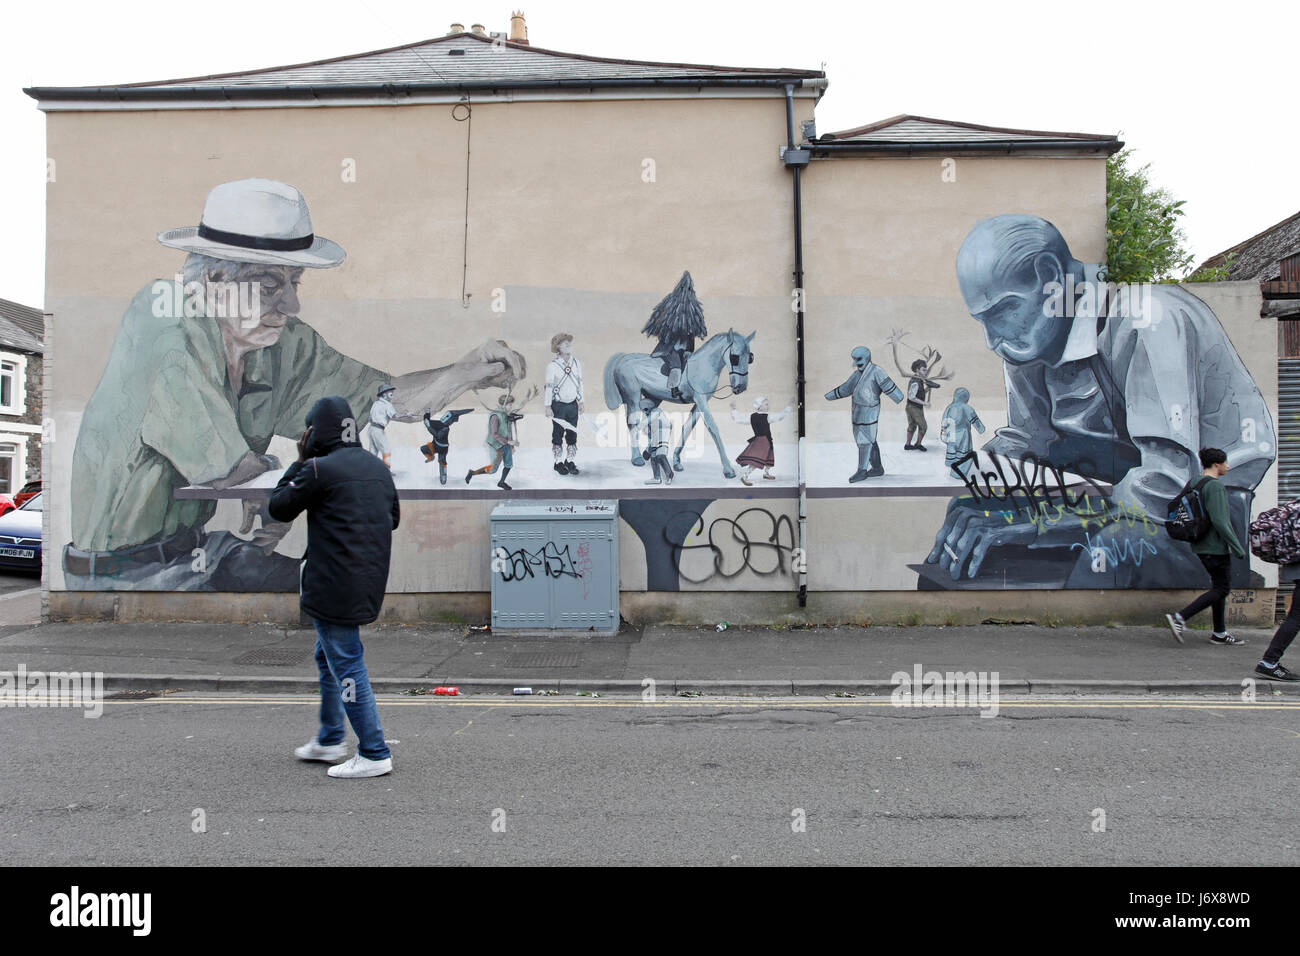 Le jeu de la vie, les échecs, une photo murale à Cardiff, Pays de Galles, Royaume-Uni Banque D'Images